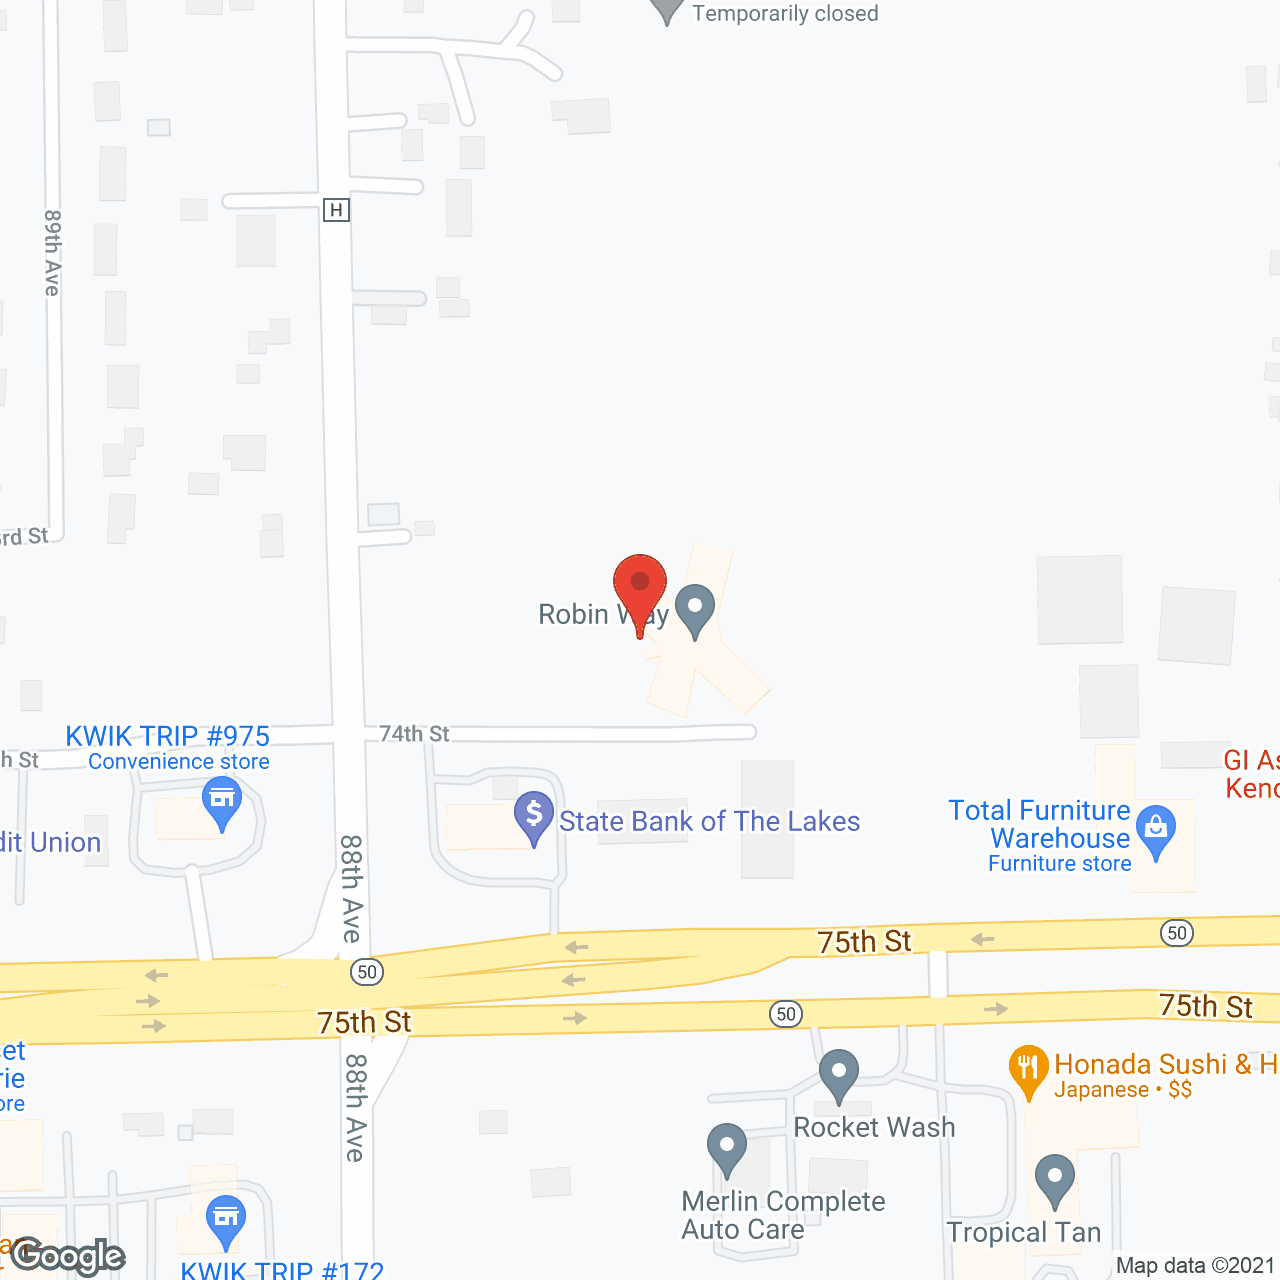 Robin Way in google map